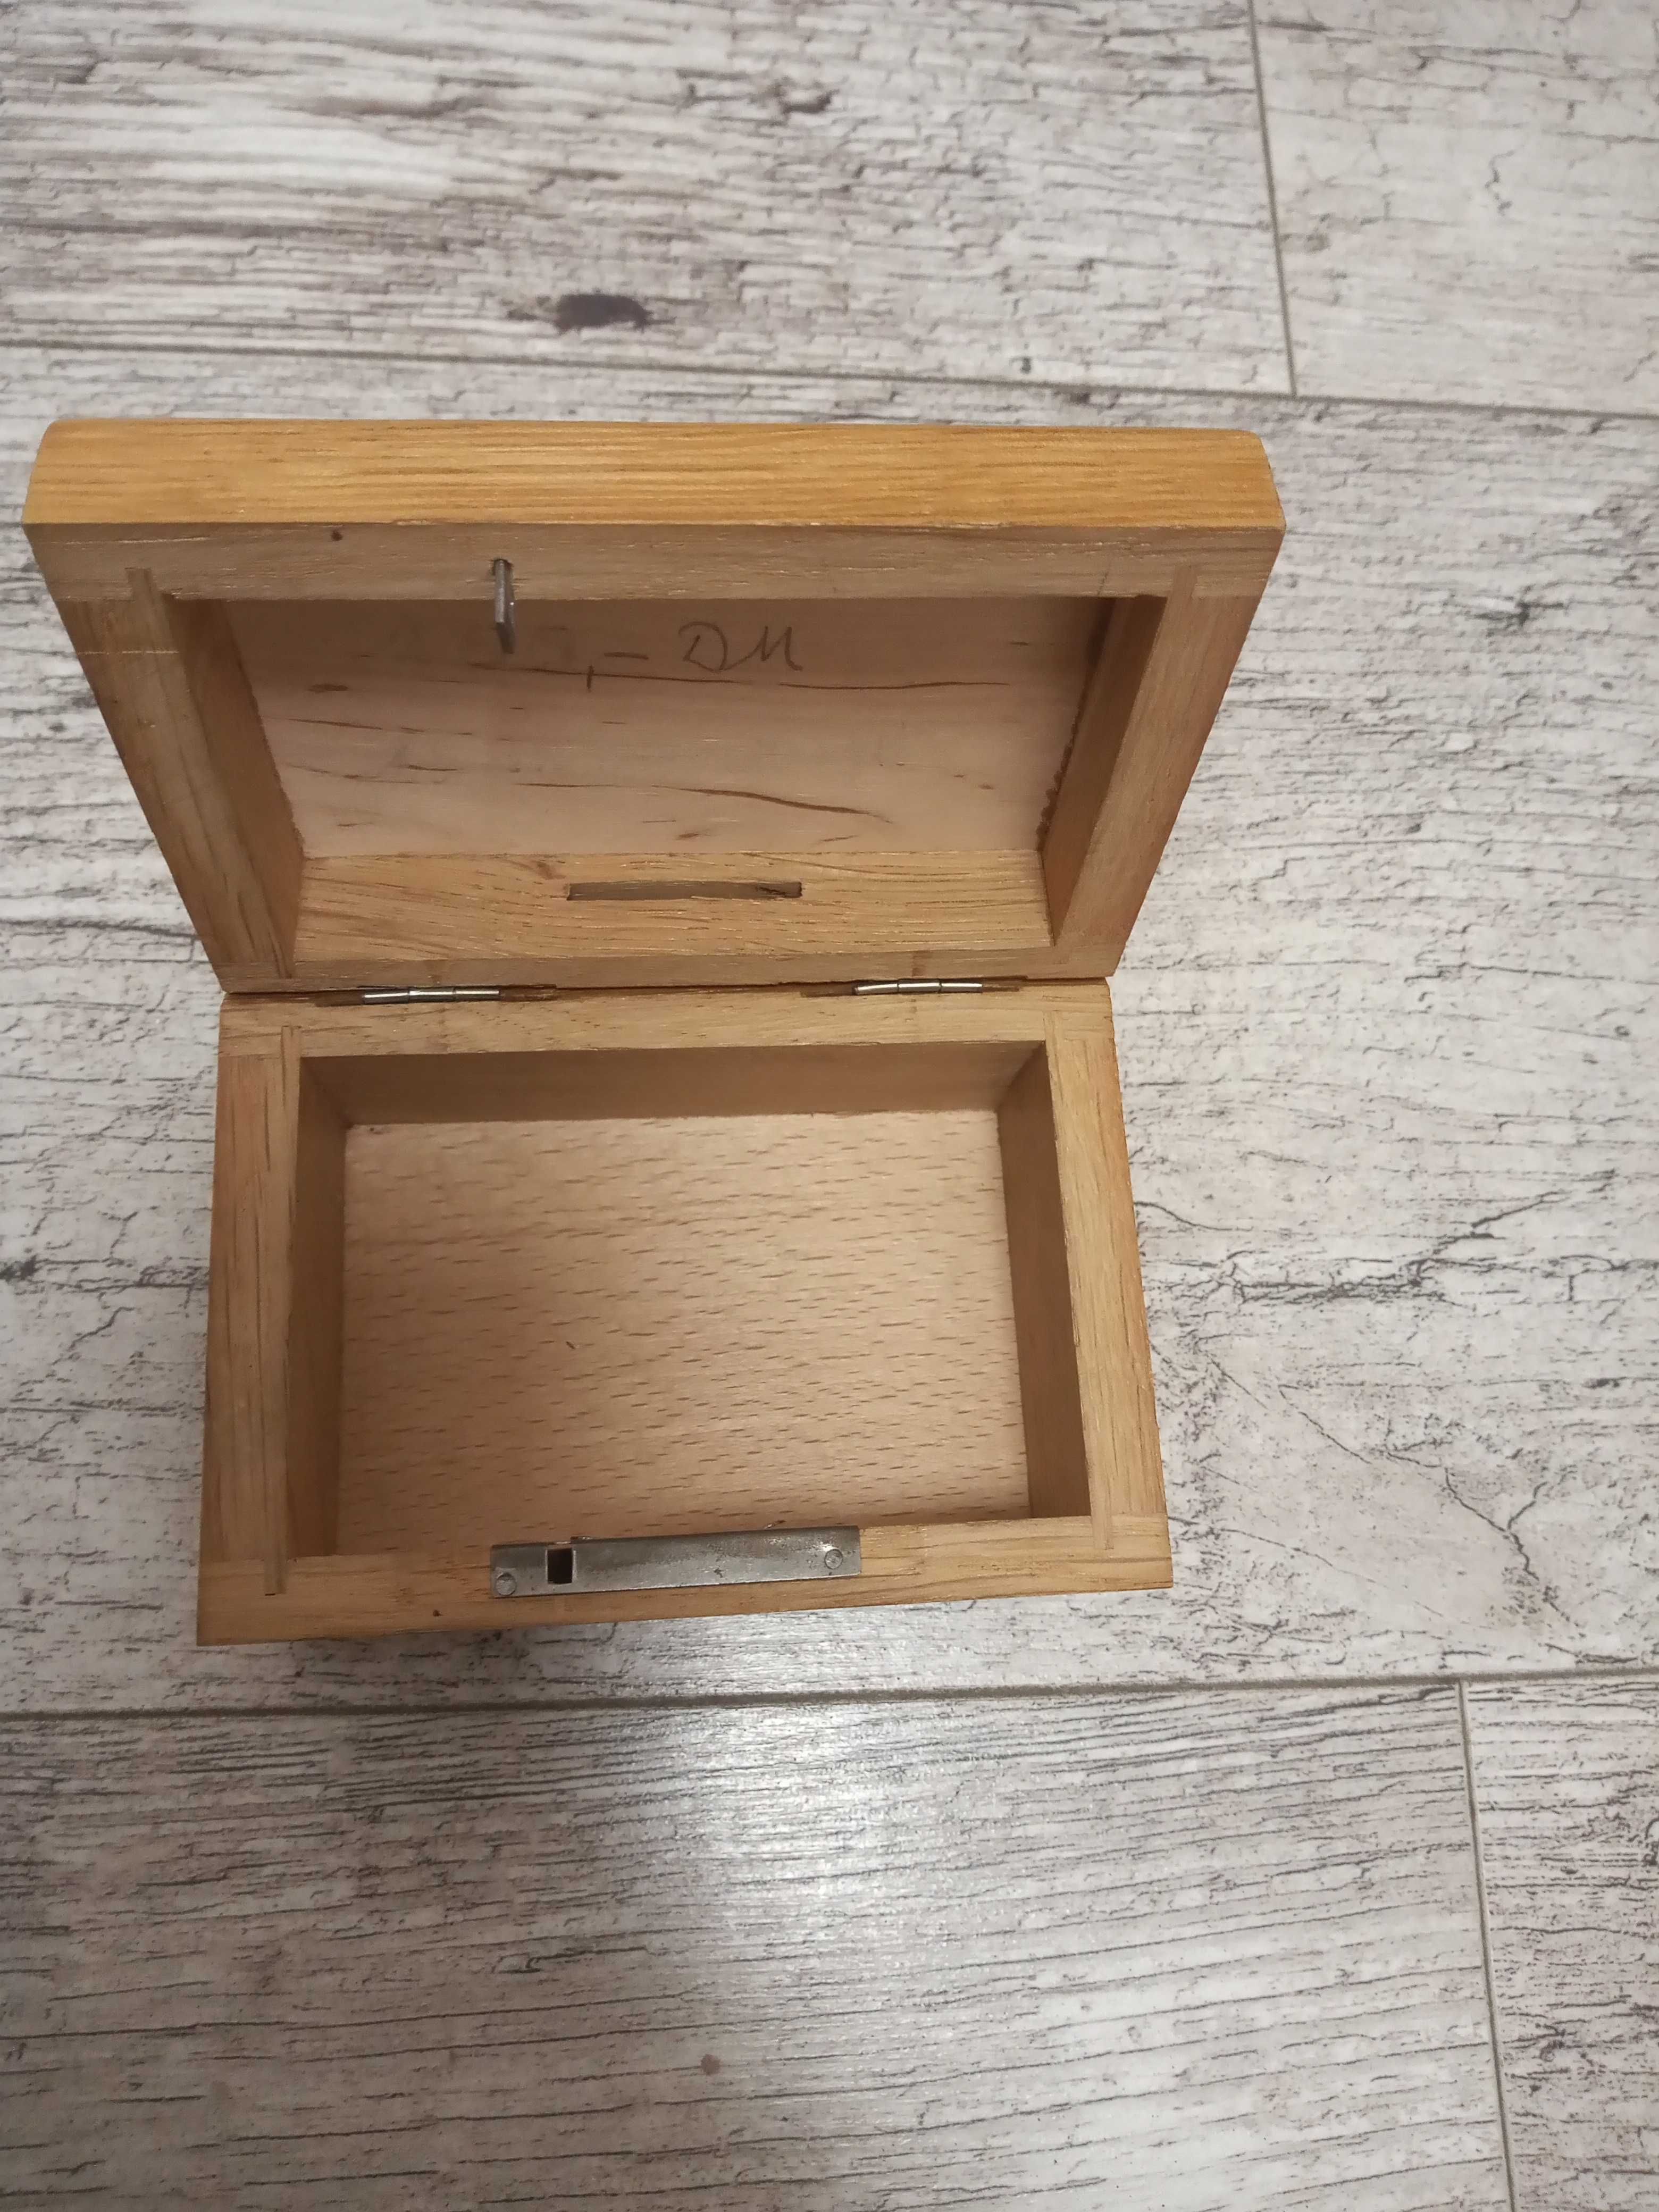 Drewniana kasetka-pudełko zdobione